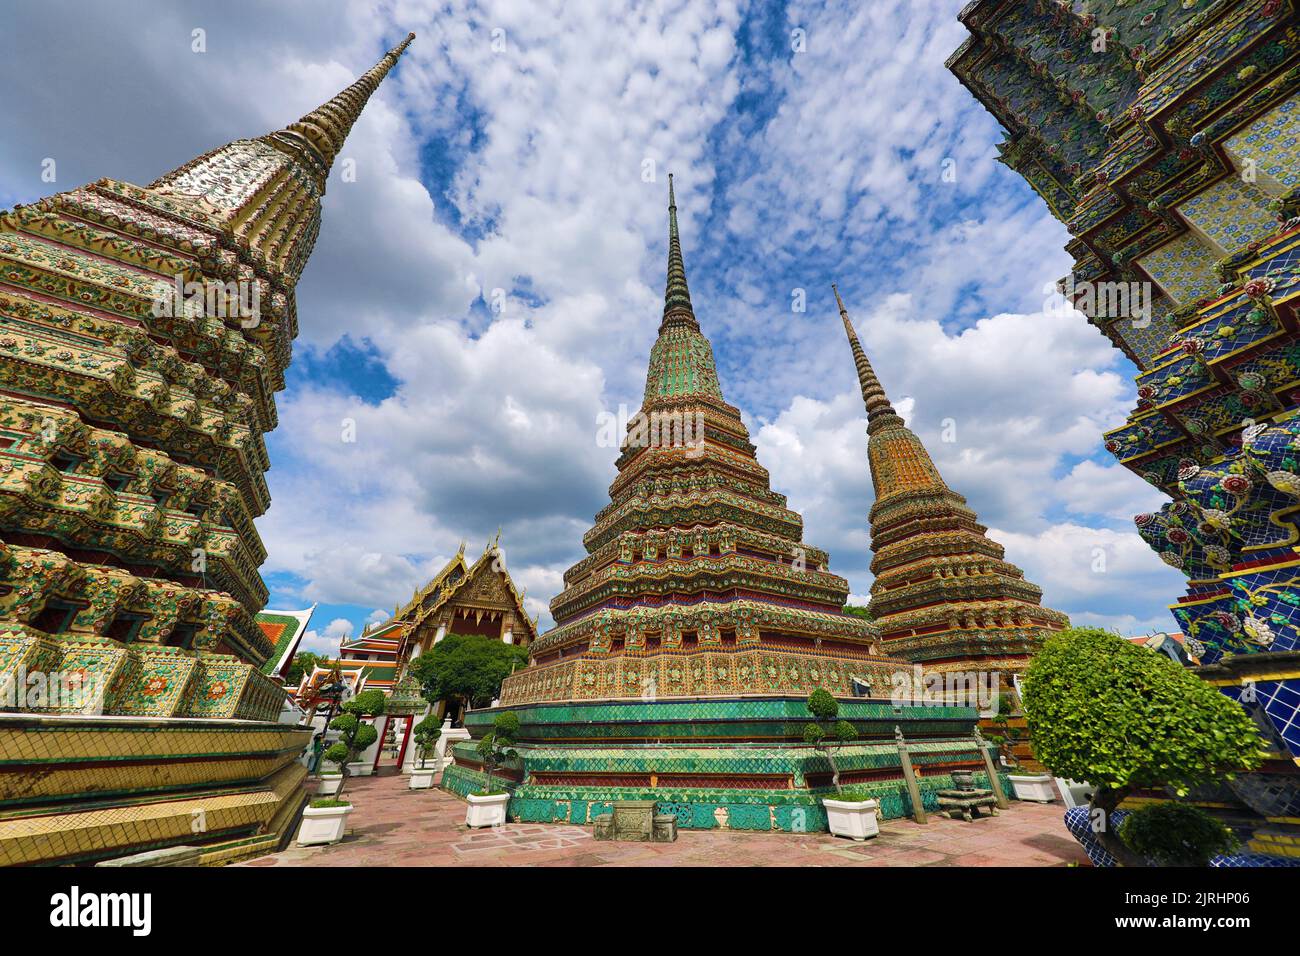 Spires of tiled Chedis at Wat Pho temple, Bangkok, Thailand Stock Photo